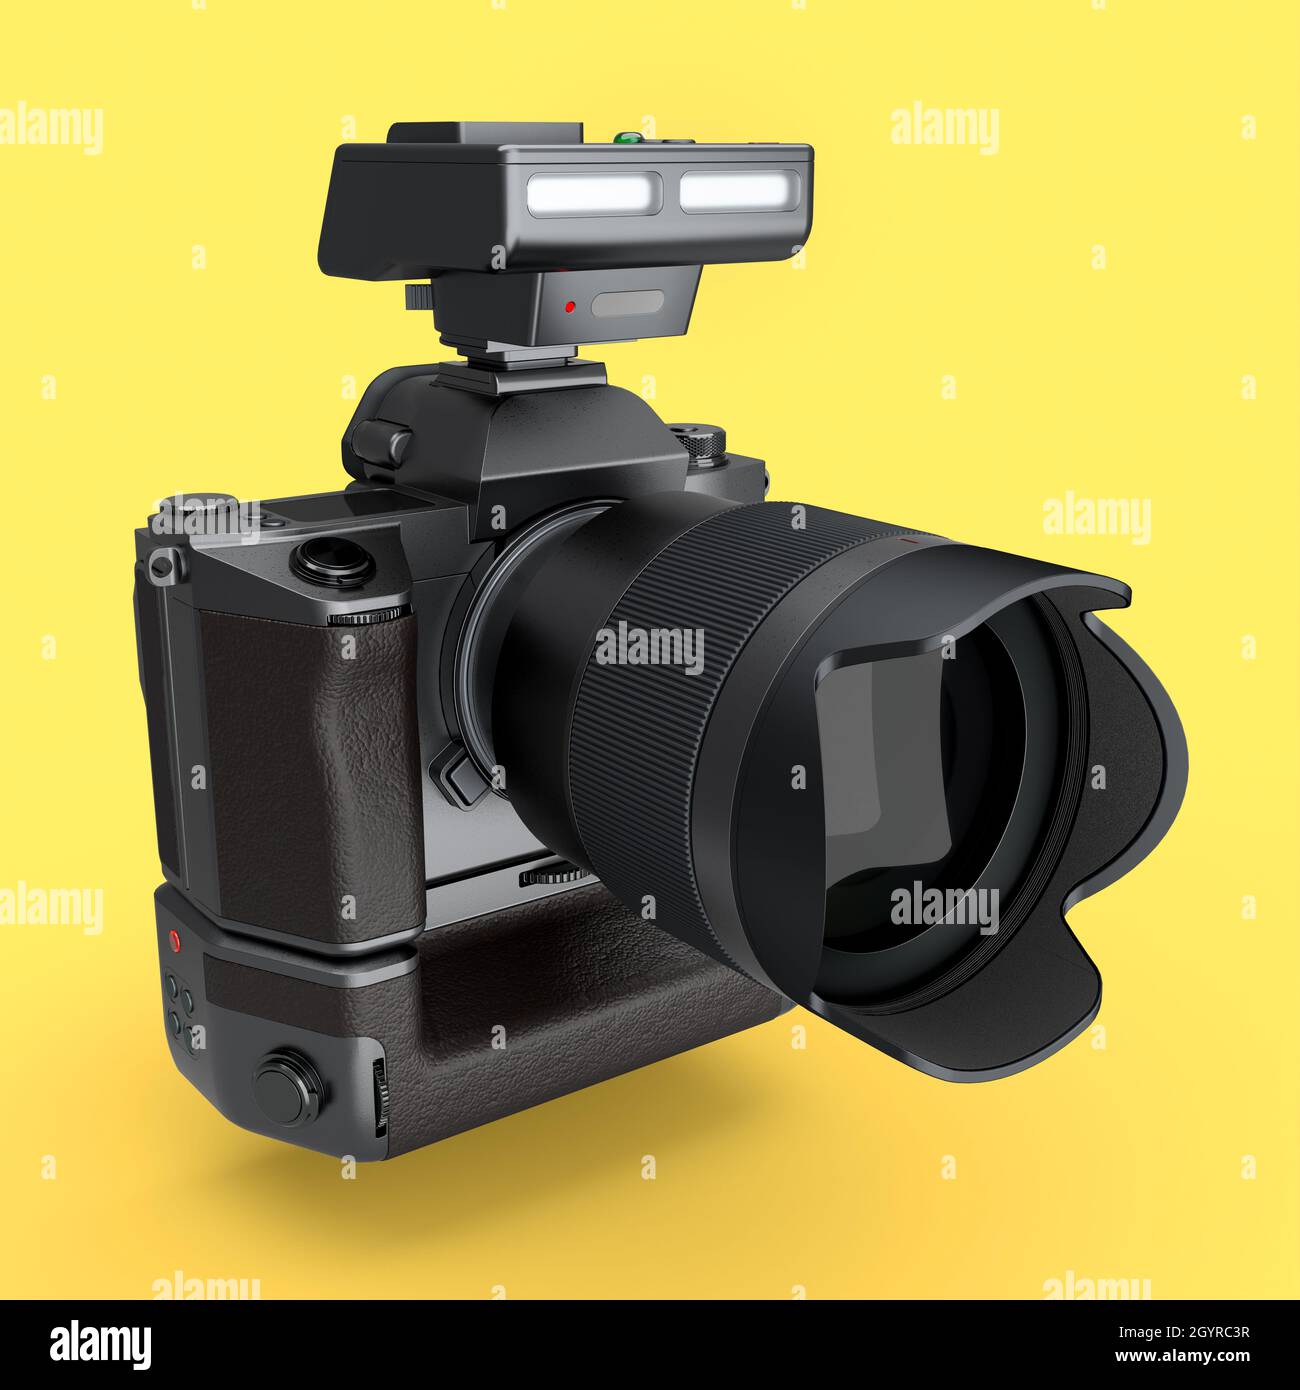 Concetto di fotocamera reflex digitale inesistente con obiettivo e flash esterno speedlight isolato su sfondo giallo. Rendering 3D e illustrazione di professional Foto Stock